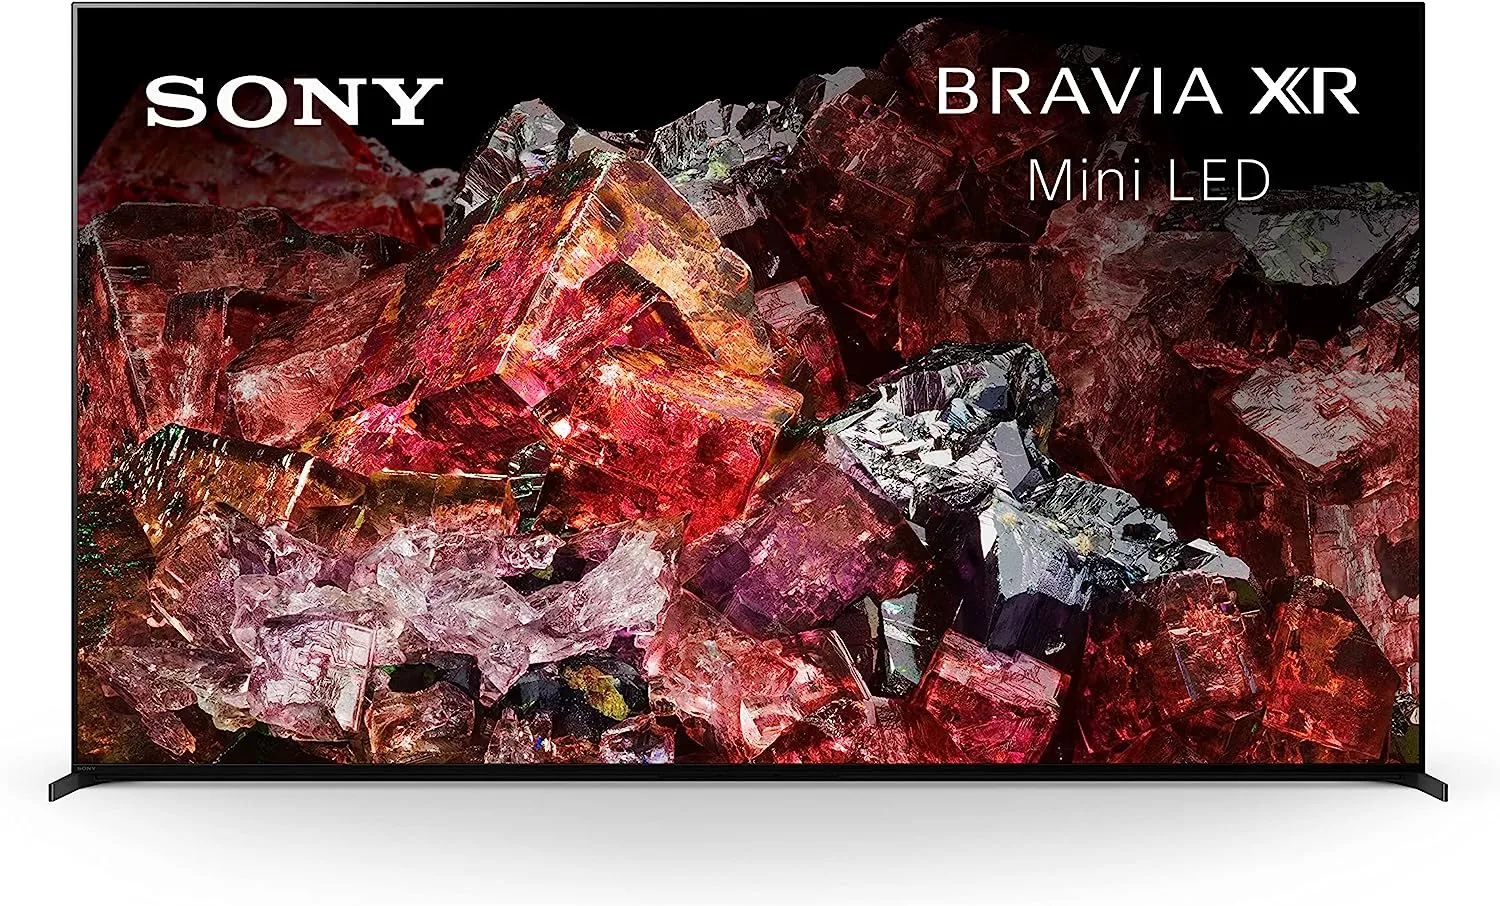 Sony BRAVIA XR 85” Class XR-85X95L Mini LED TV